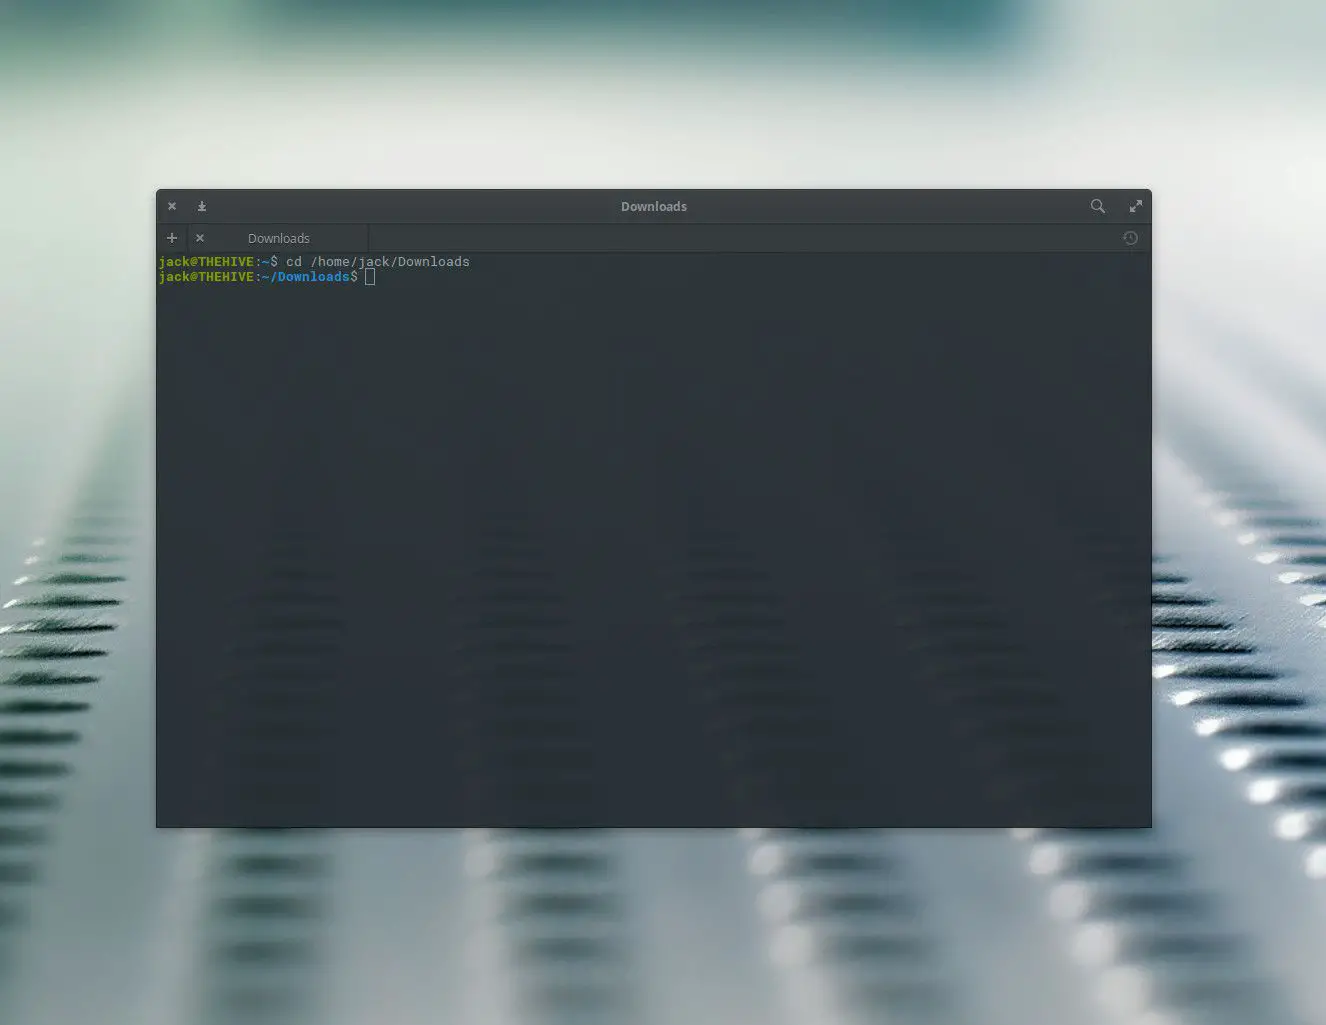 Captura de tela de um comando de terminal Linux.